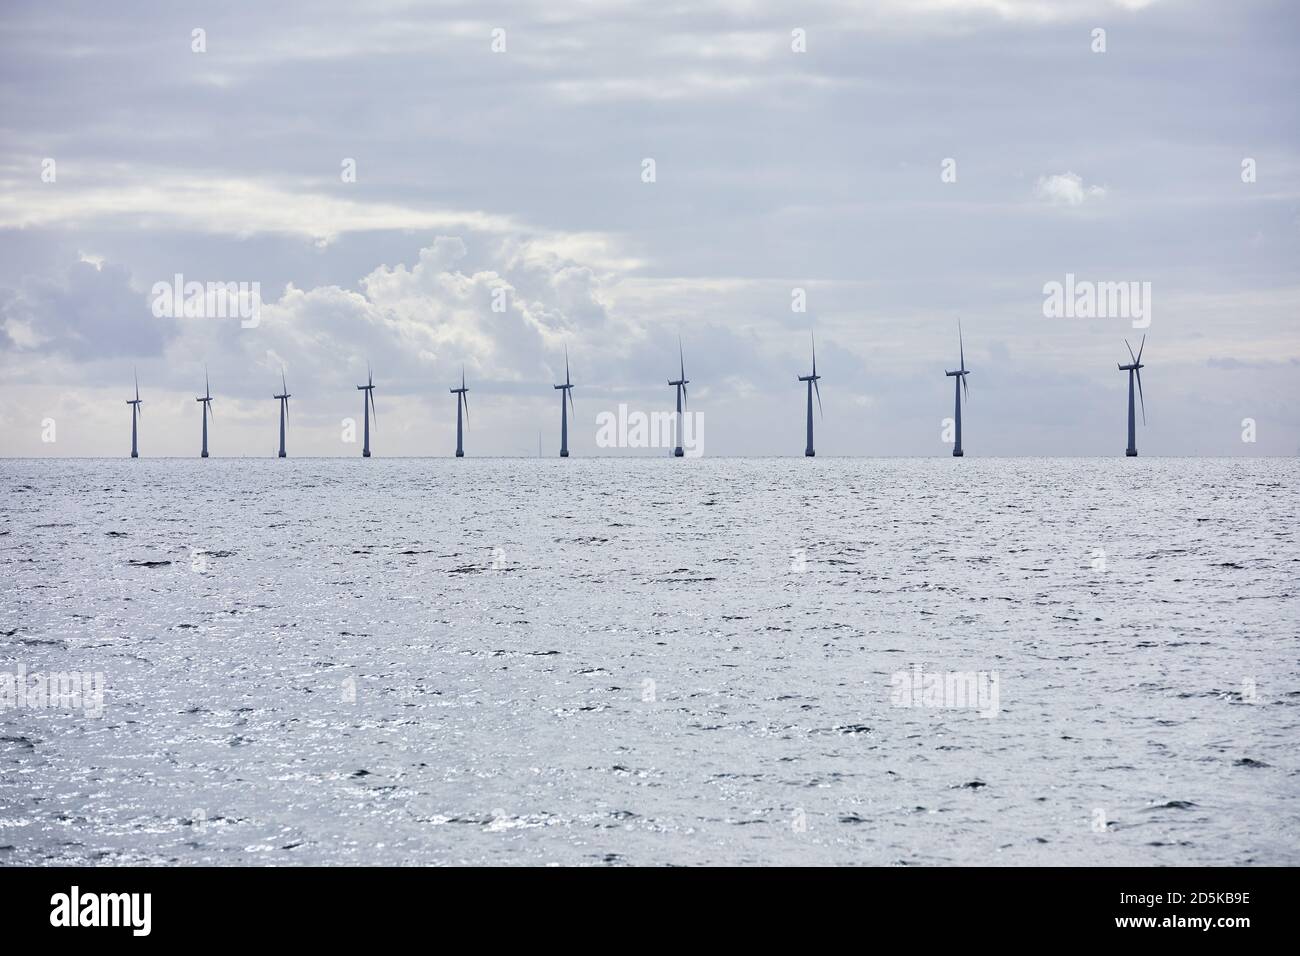 Parc de moulins à vent offshore Paludan Flak, au sud de Samsø, Danemark Banque D'Images